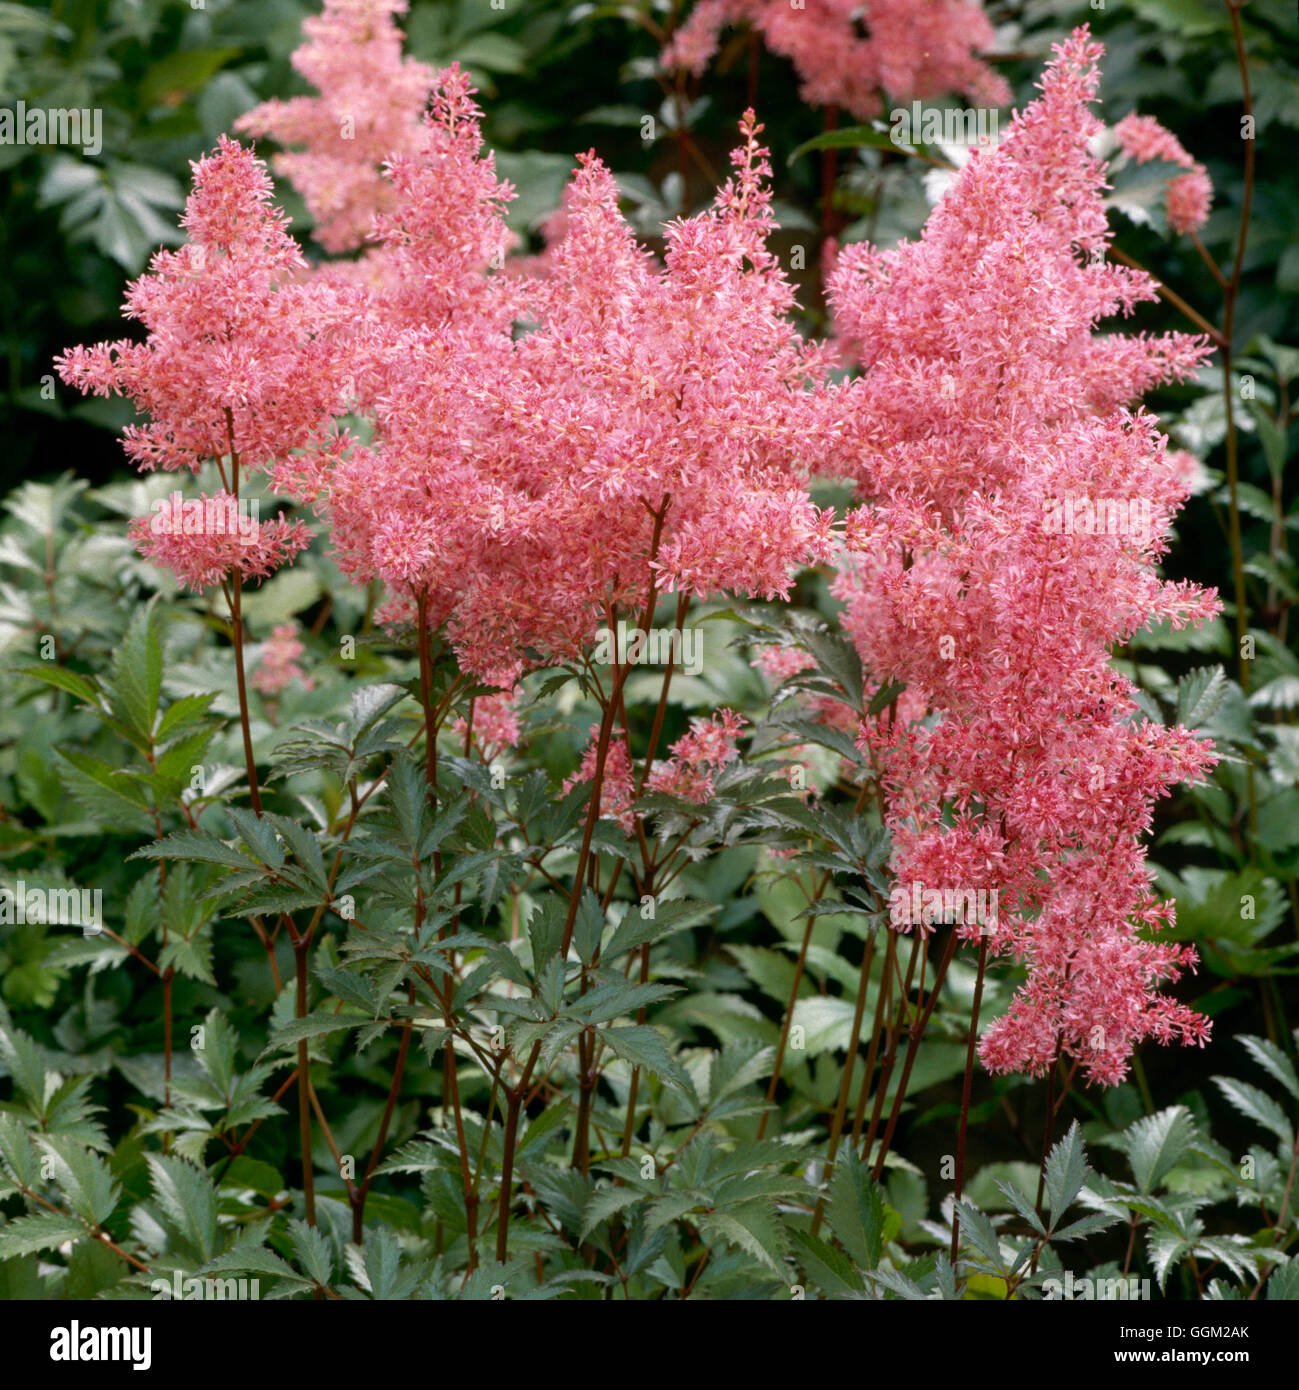 Astilbe - `Inshriach Pink' (simplicifolia hybrid)   PER057197 Stock Photo